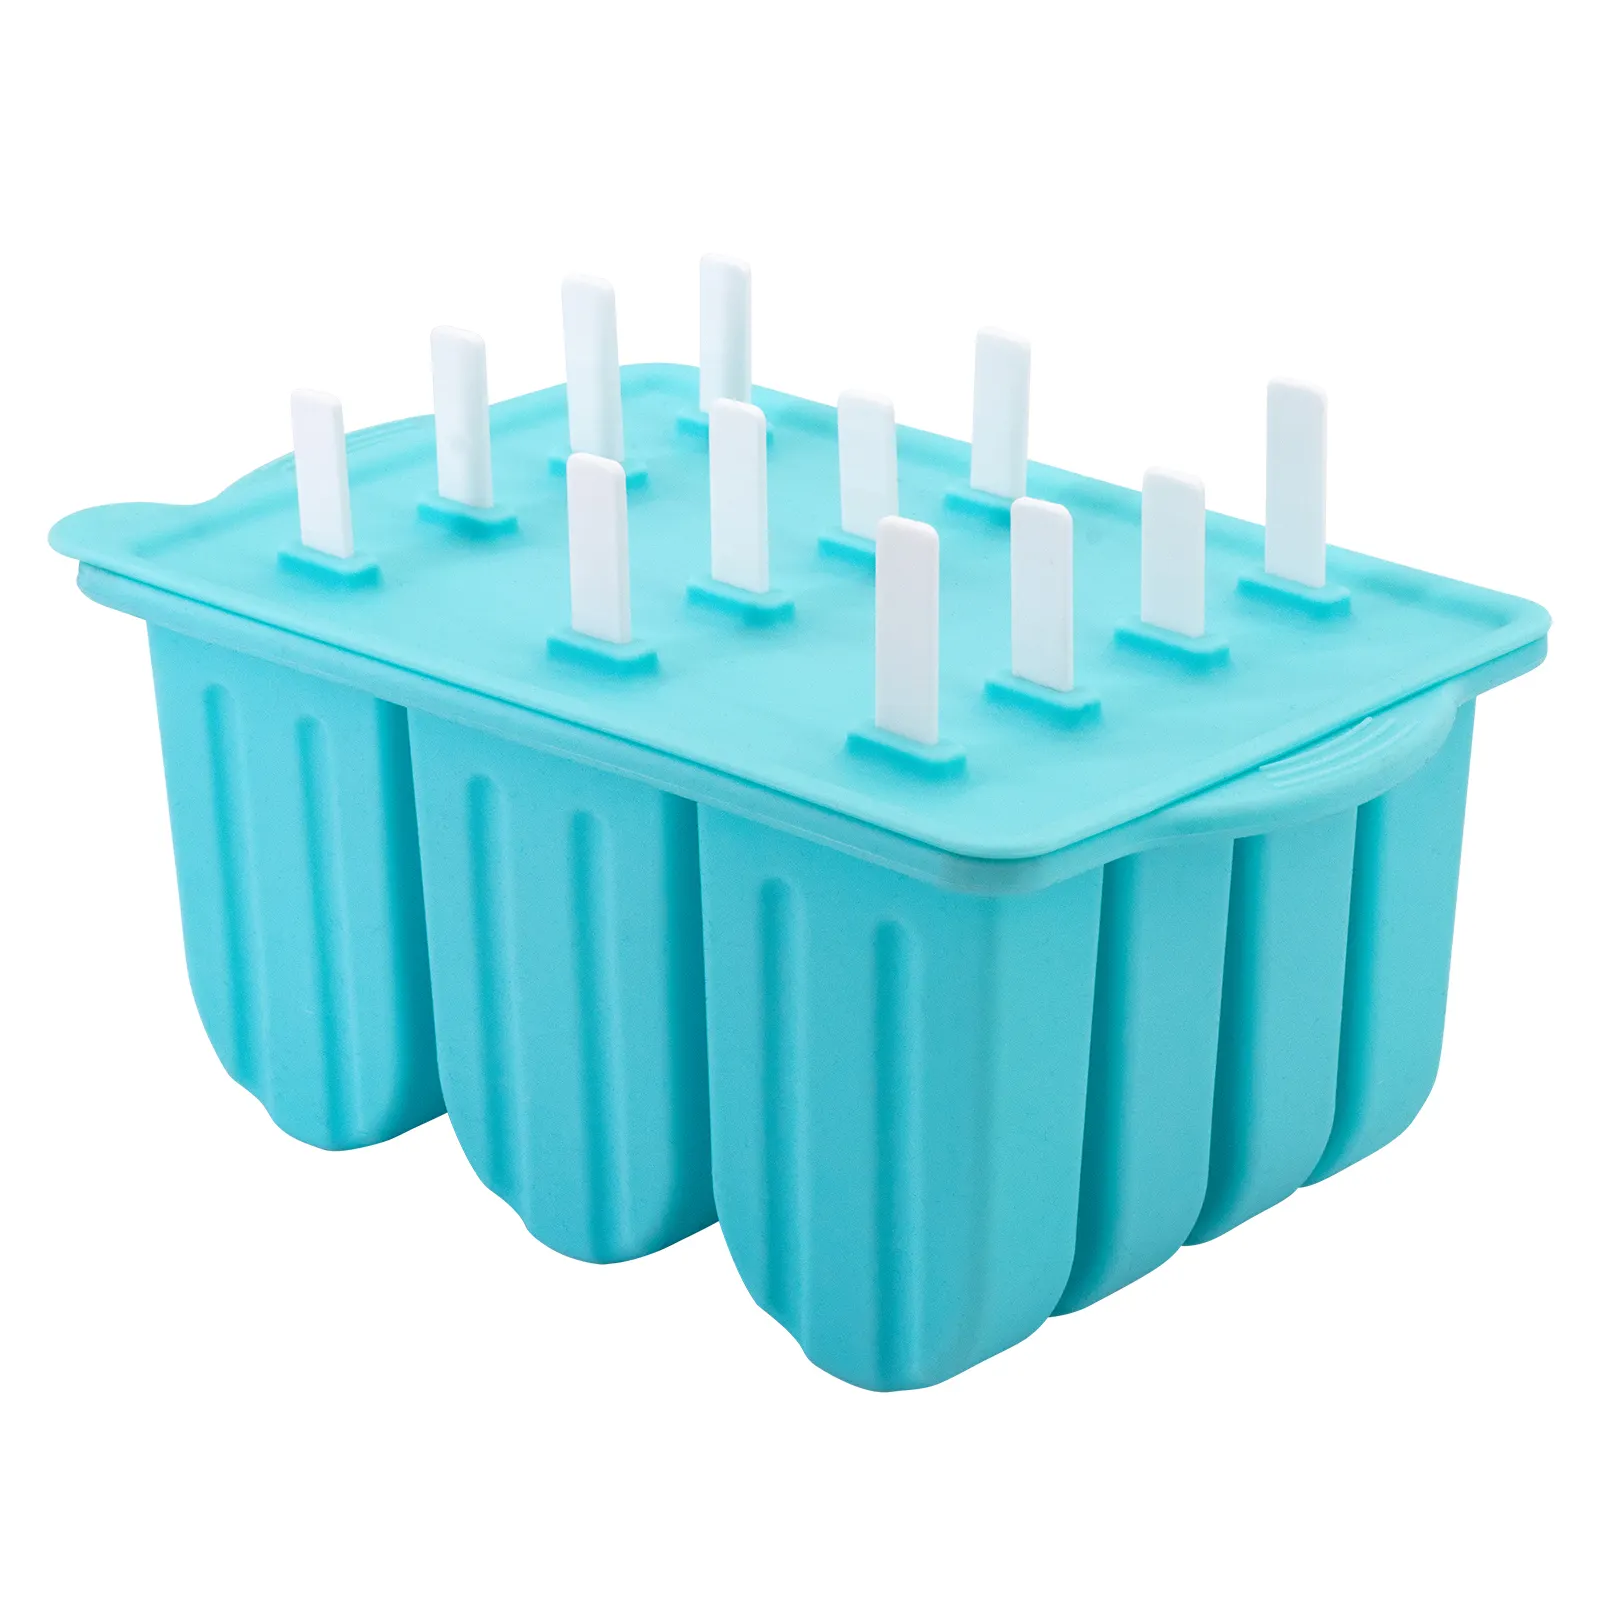 Moldes de silicone de 12 cavidades para crianças, moldes de picolé para crianças e adultos de grau alimentar, moldes de gelo sem bpa